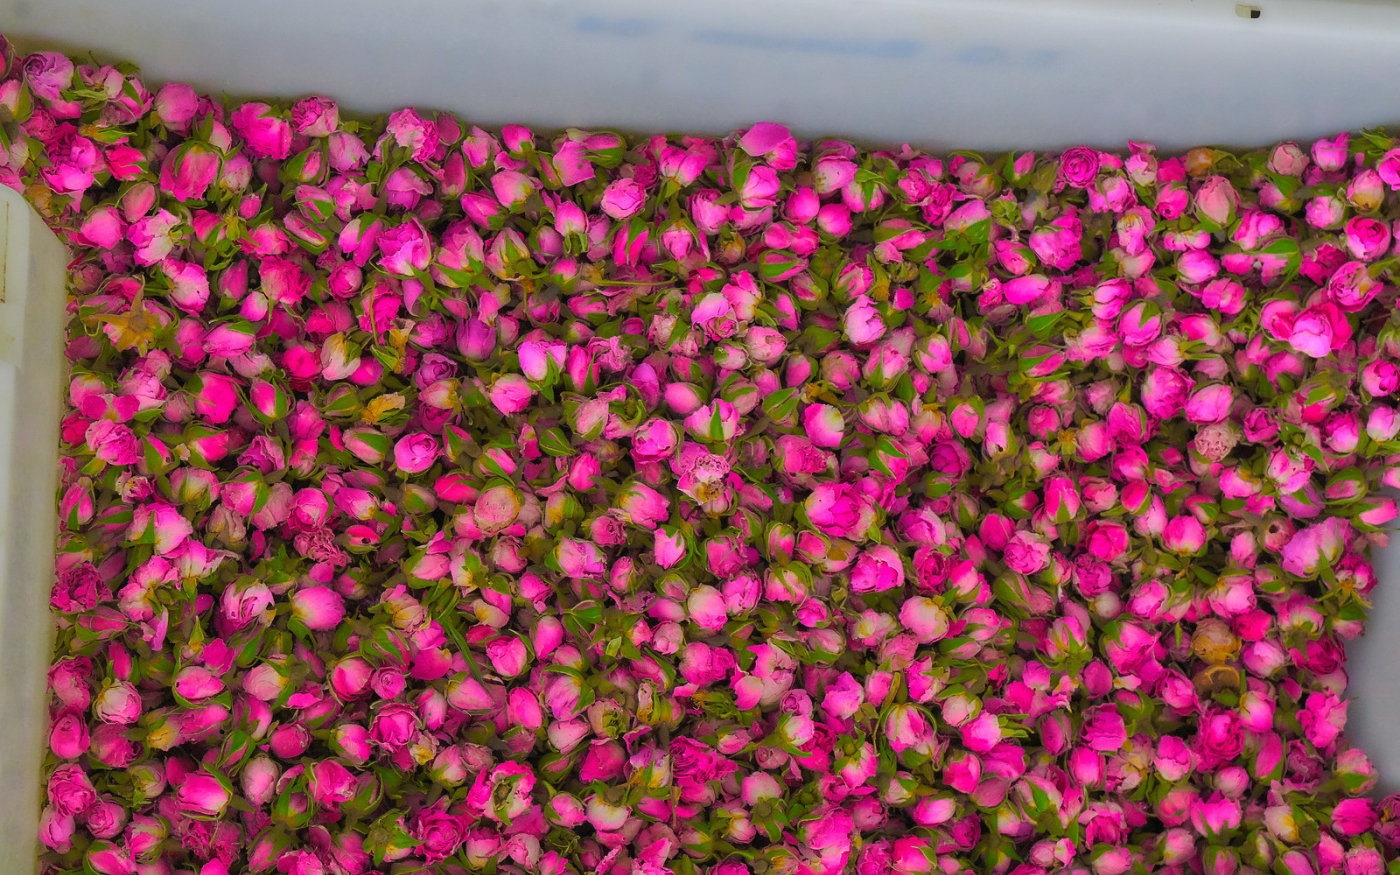 Roses fraîchement cueillies dans une distillerie d’eau de rose (Creative Commons/Graeme Churchard)